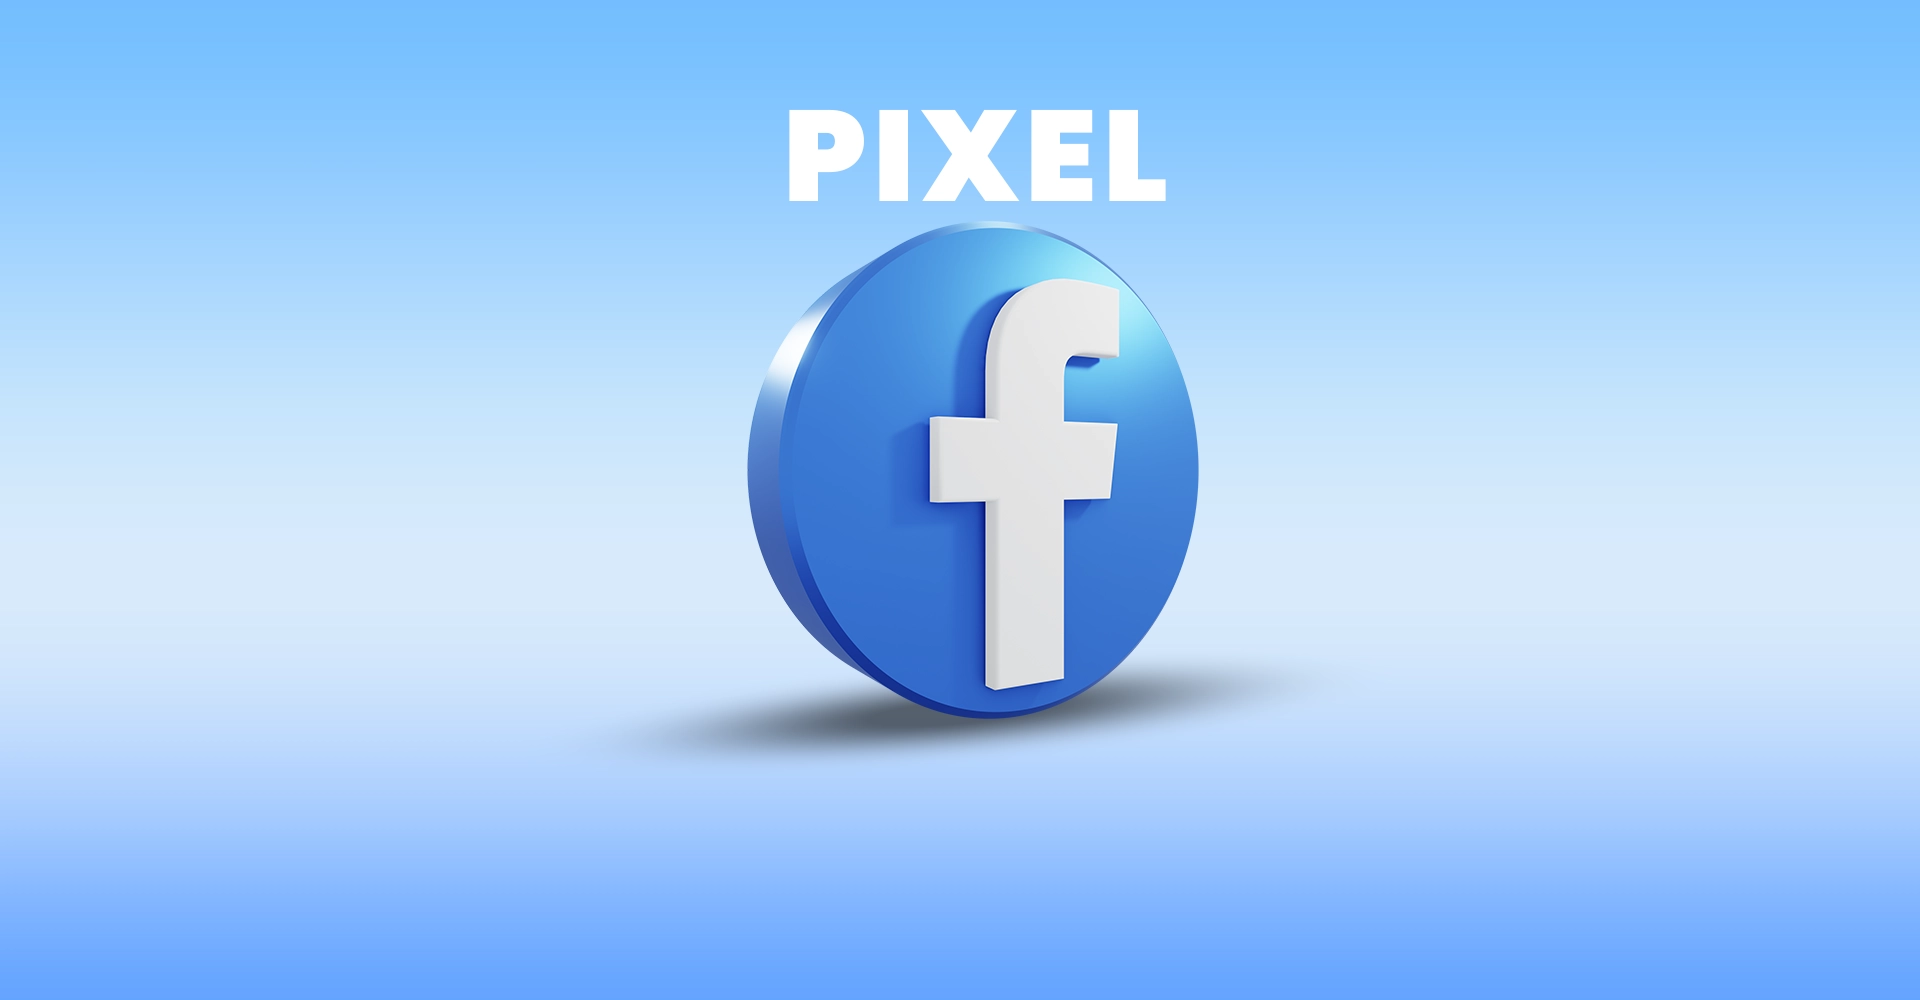 Pixel Facebook Ads : sa définition, son rôle, ses avantages